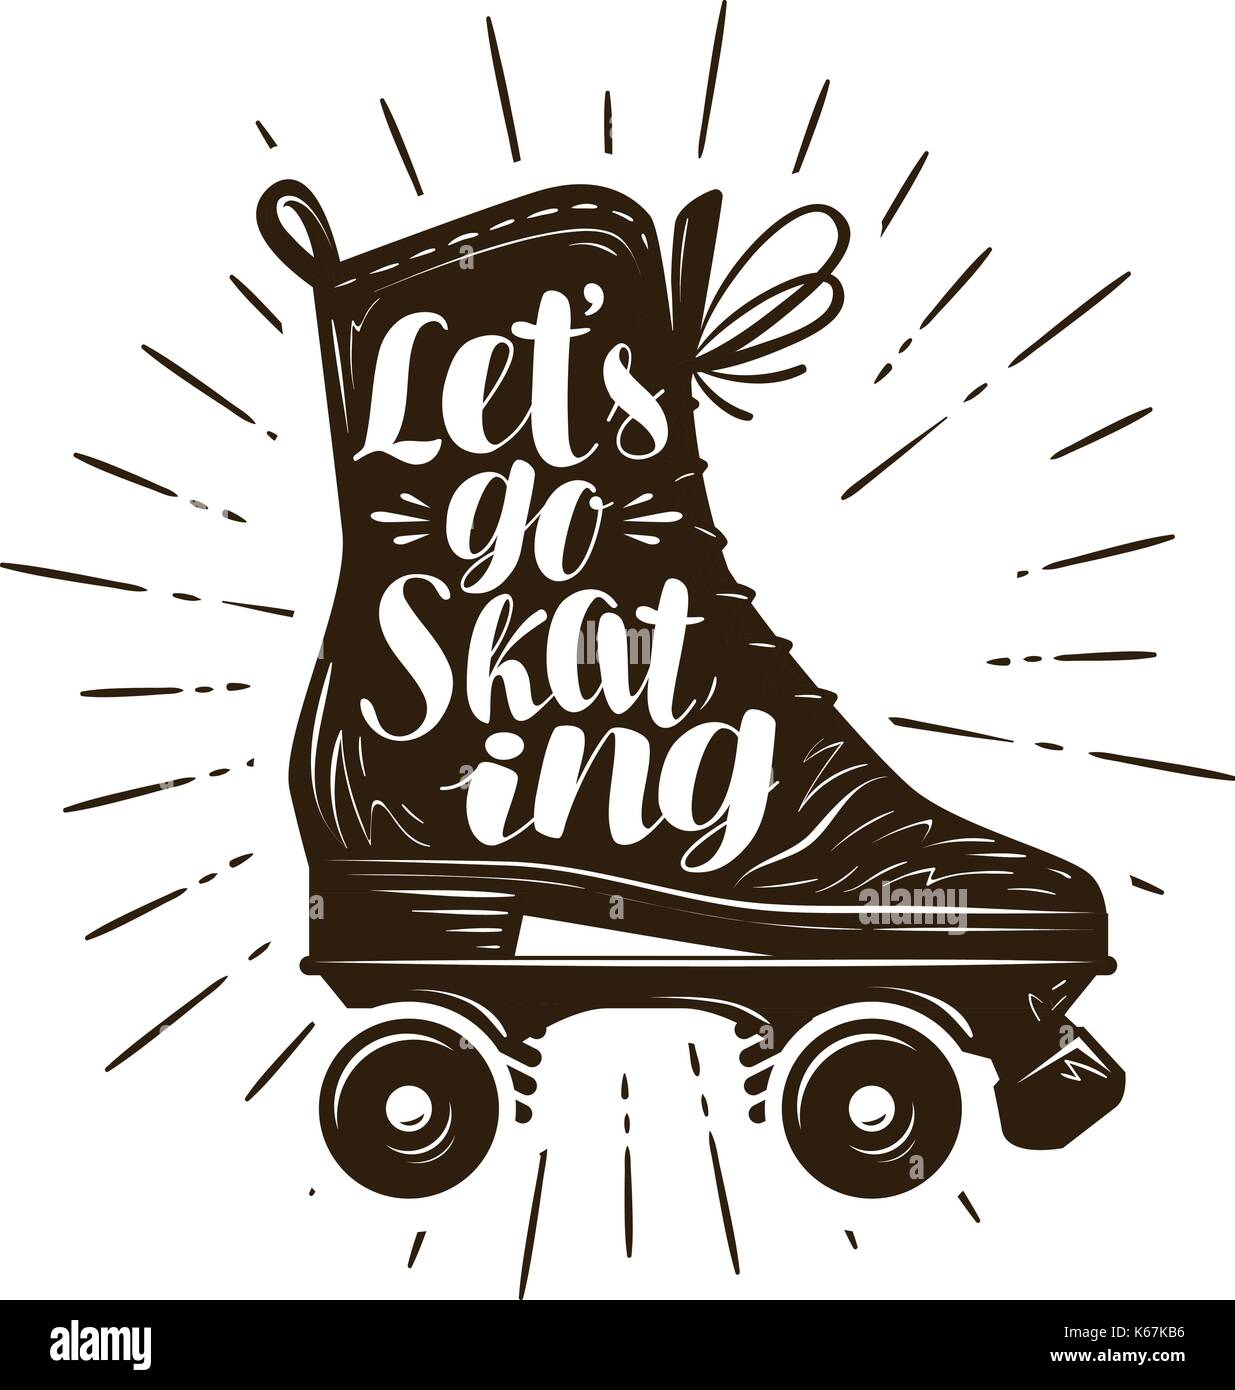 Let's go skating, bannière. La conception typographique. lettrage manuscrit vector illustration Illustration de Vecteur